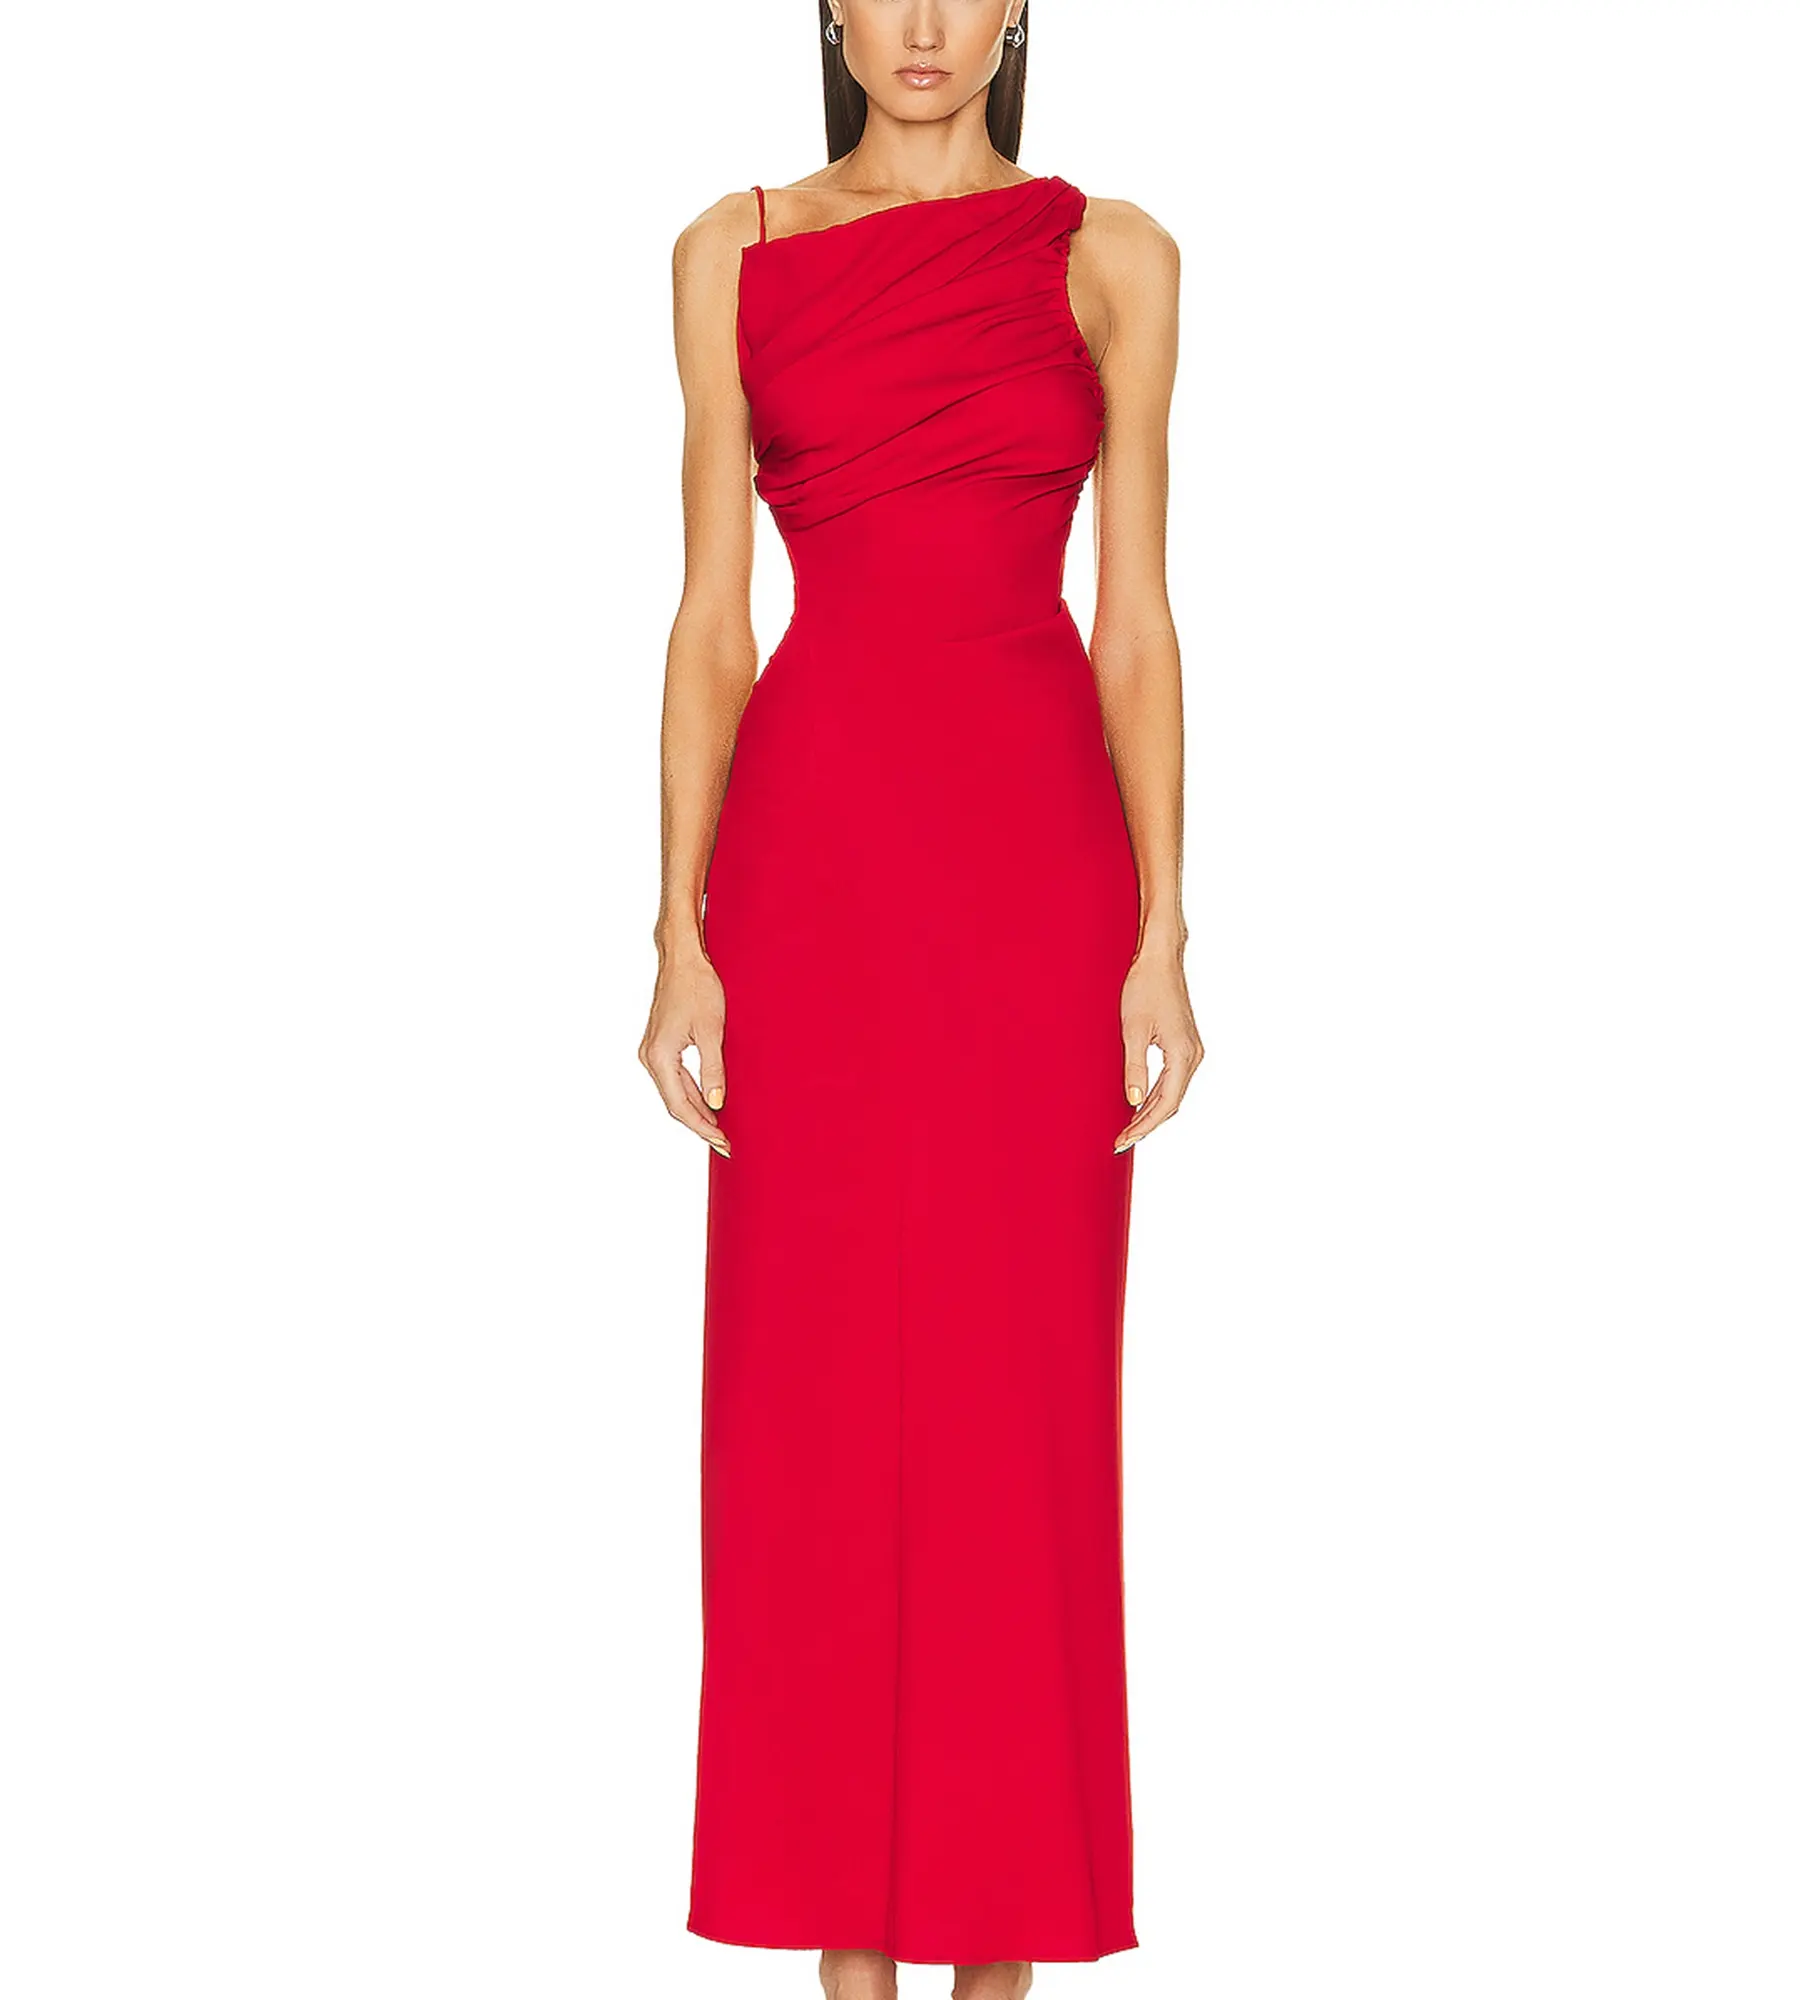 Kırmızı kayma elbise kolsuz pileli bel şekillendirme Backless seksi moda bayanlar ziyafet akşam uzun elbiseler